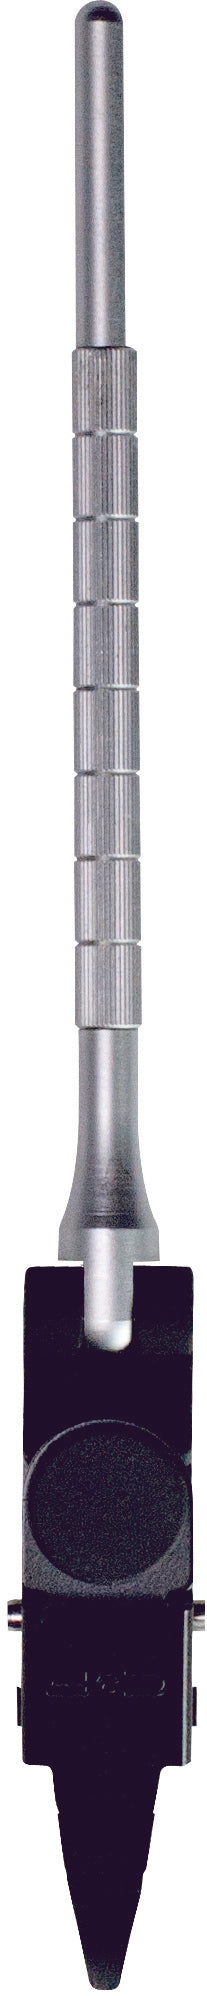 C&F Design Midge Rotary Hackle Pliers (CFT-140-Midge)